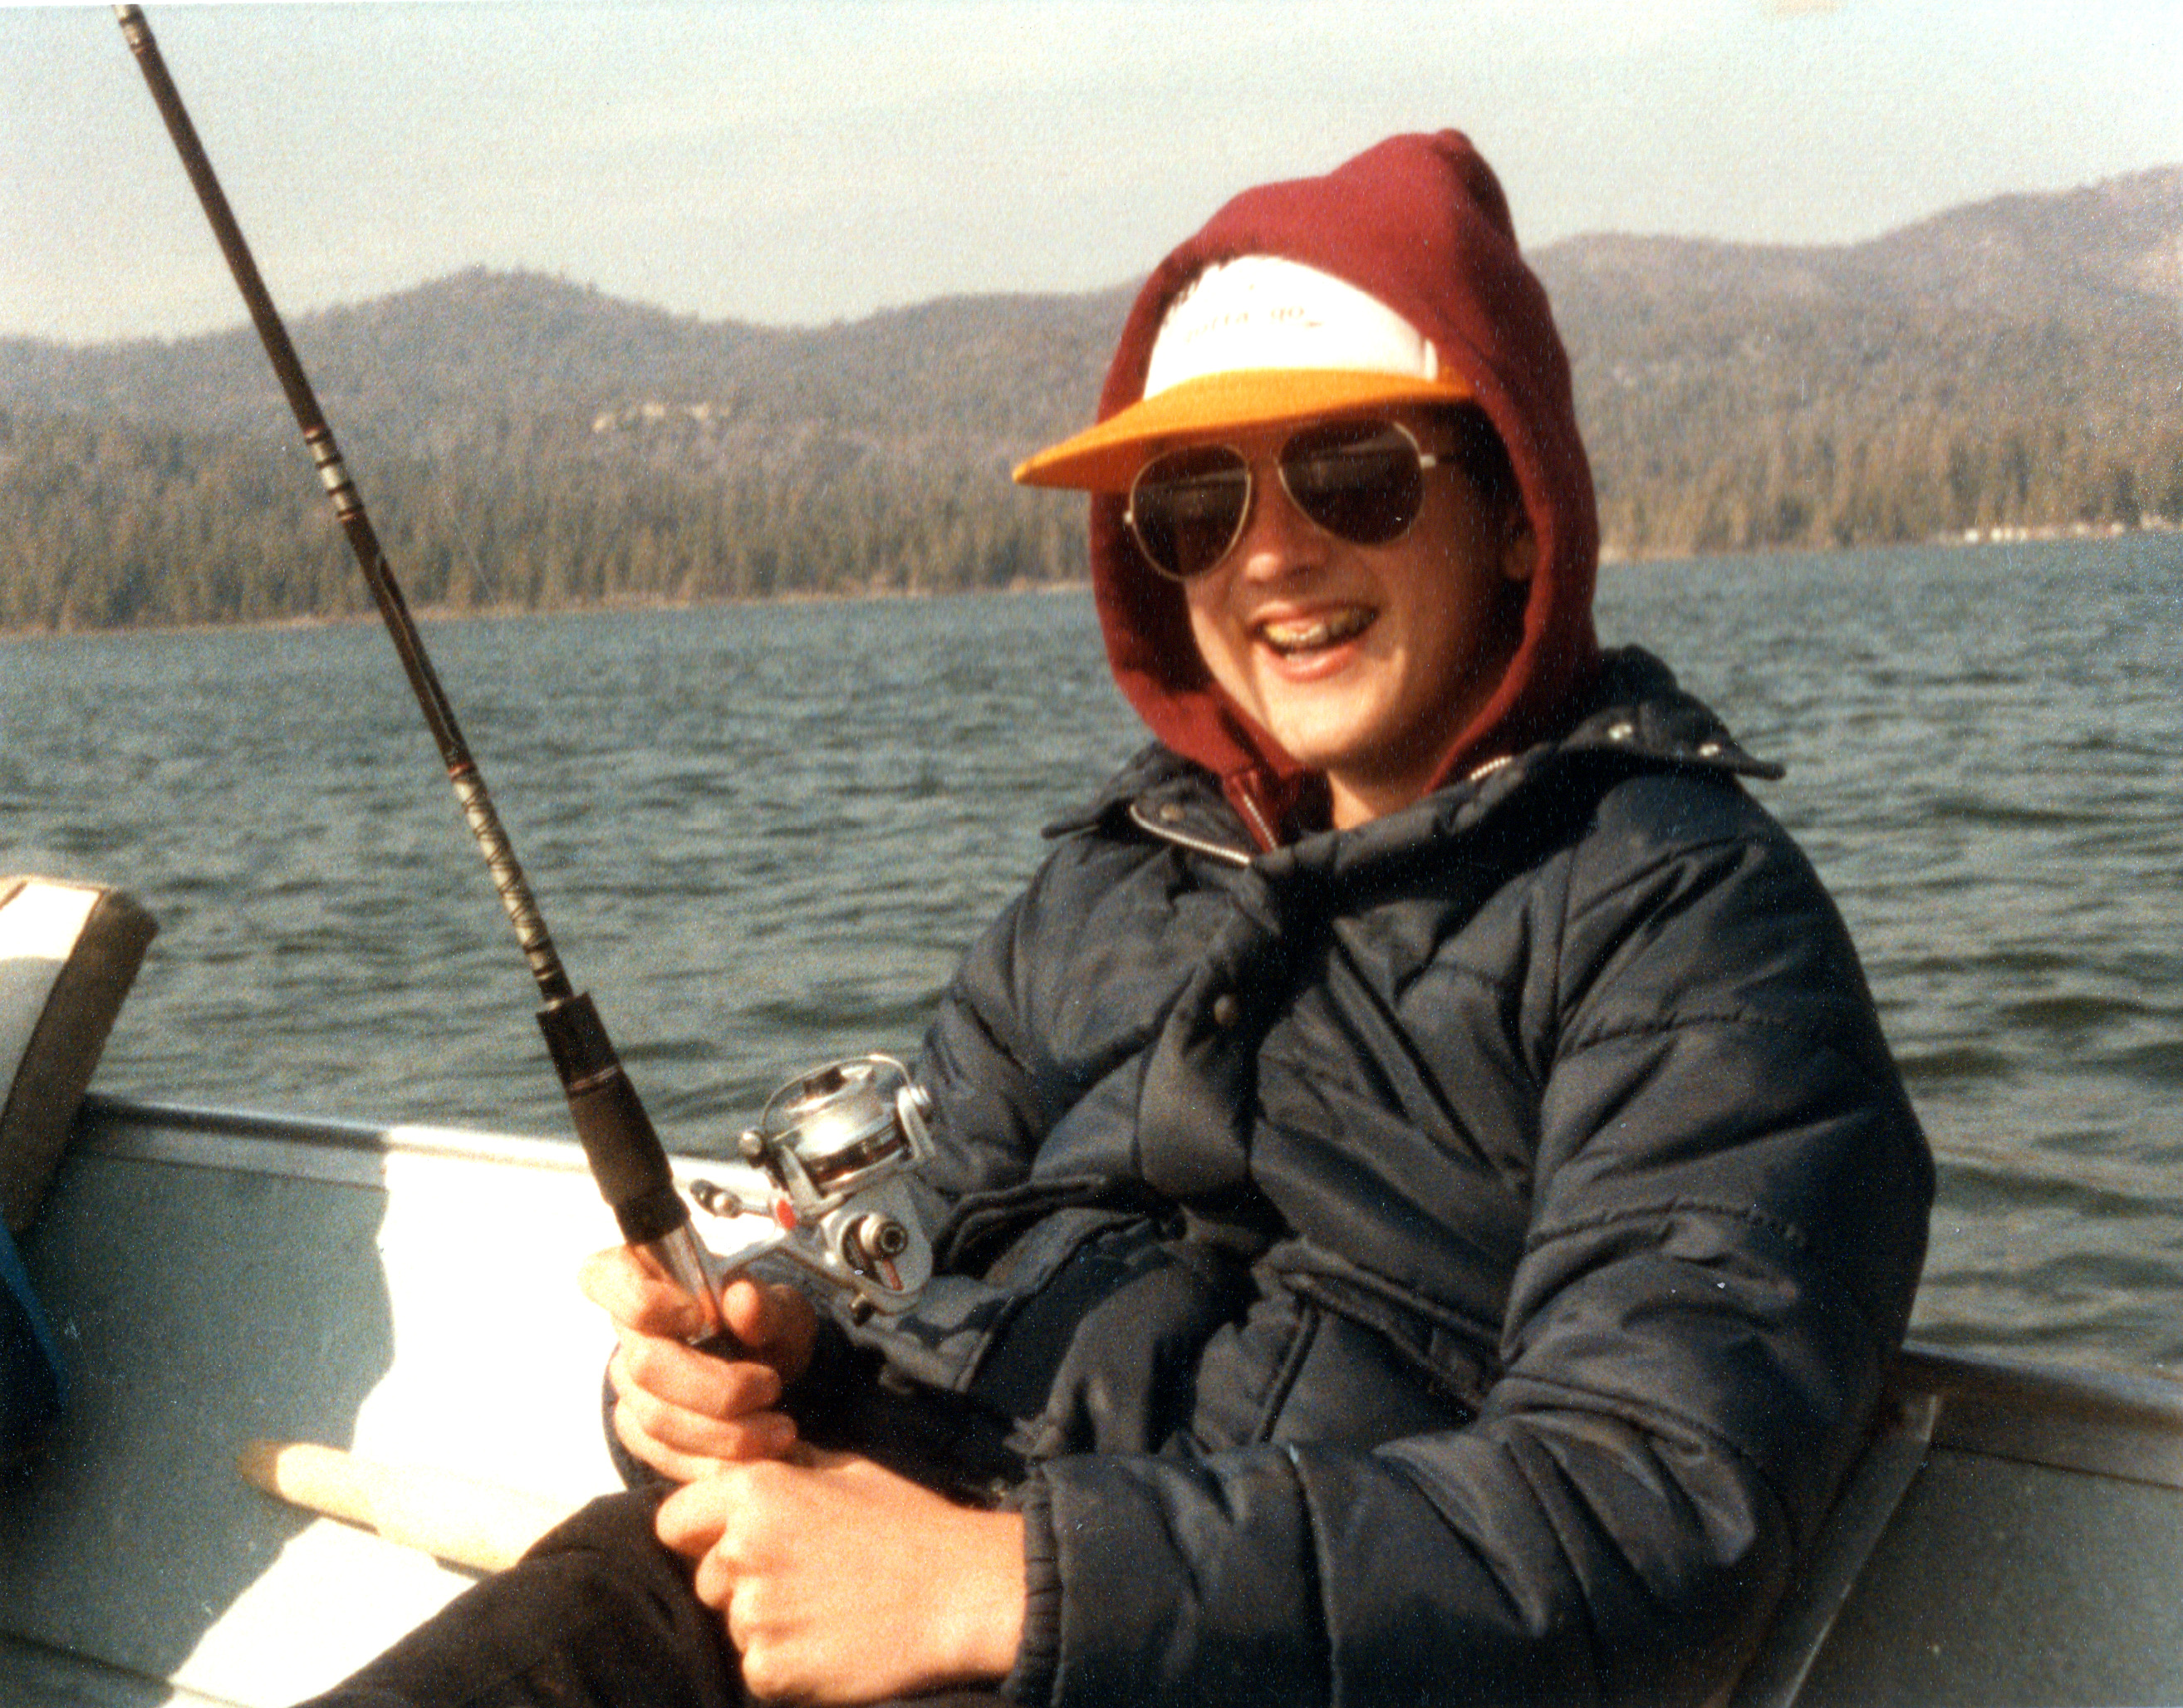 Ken Fishing in Big Bear